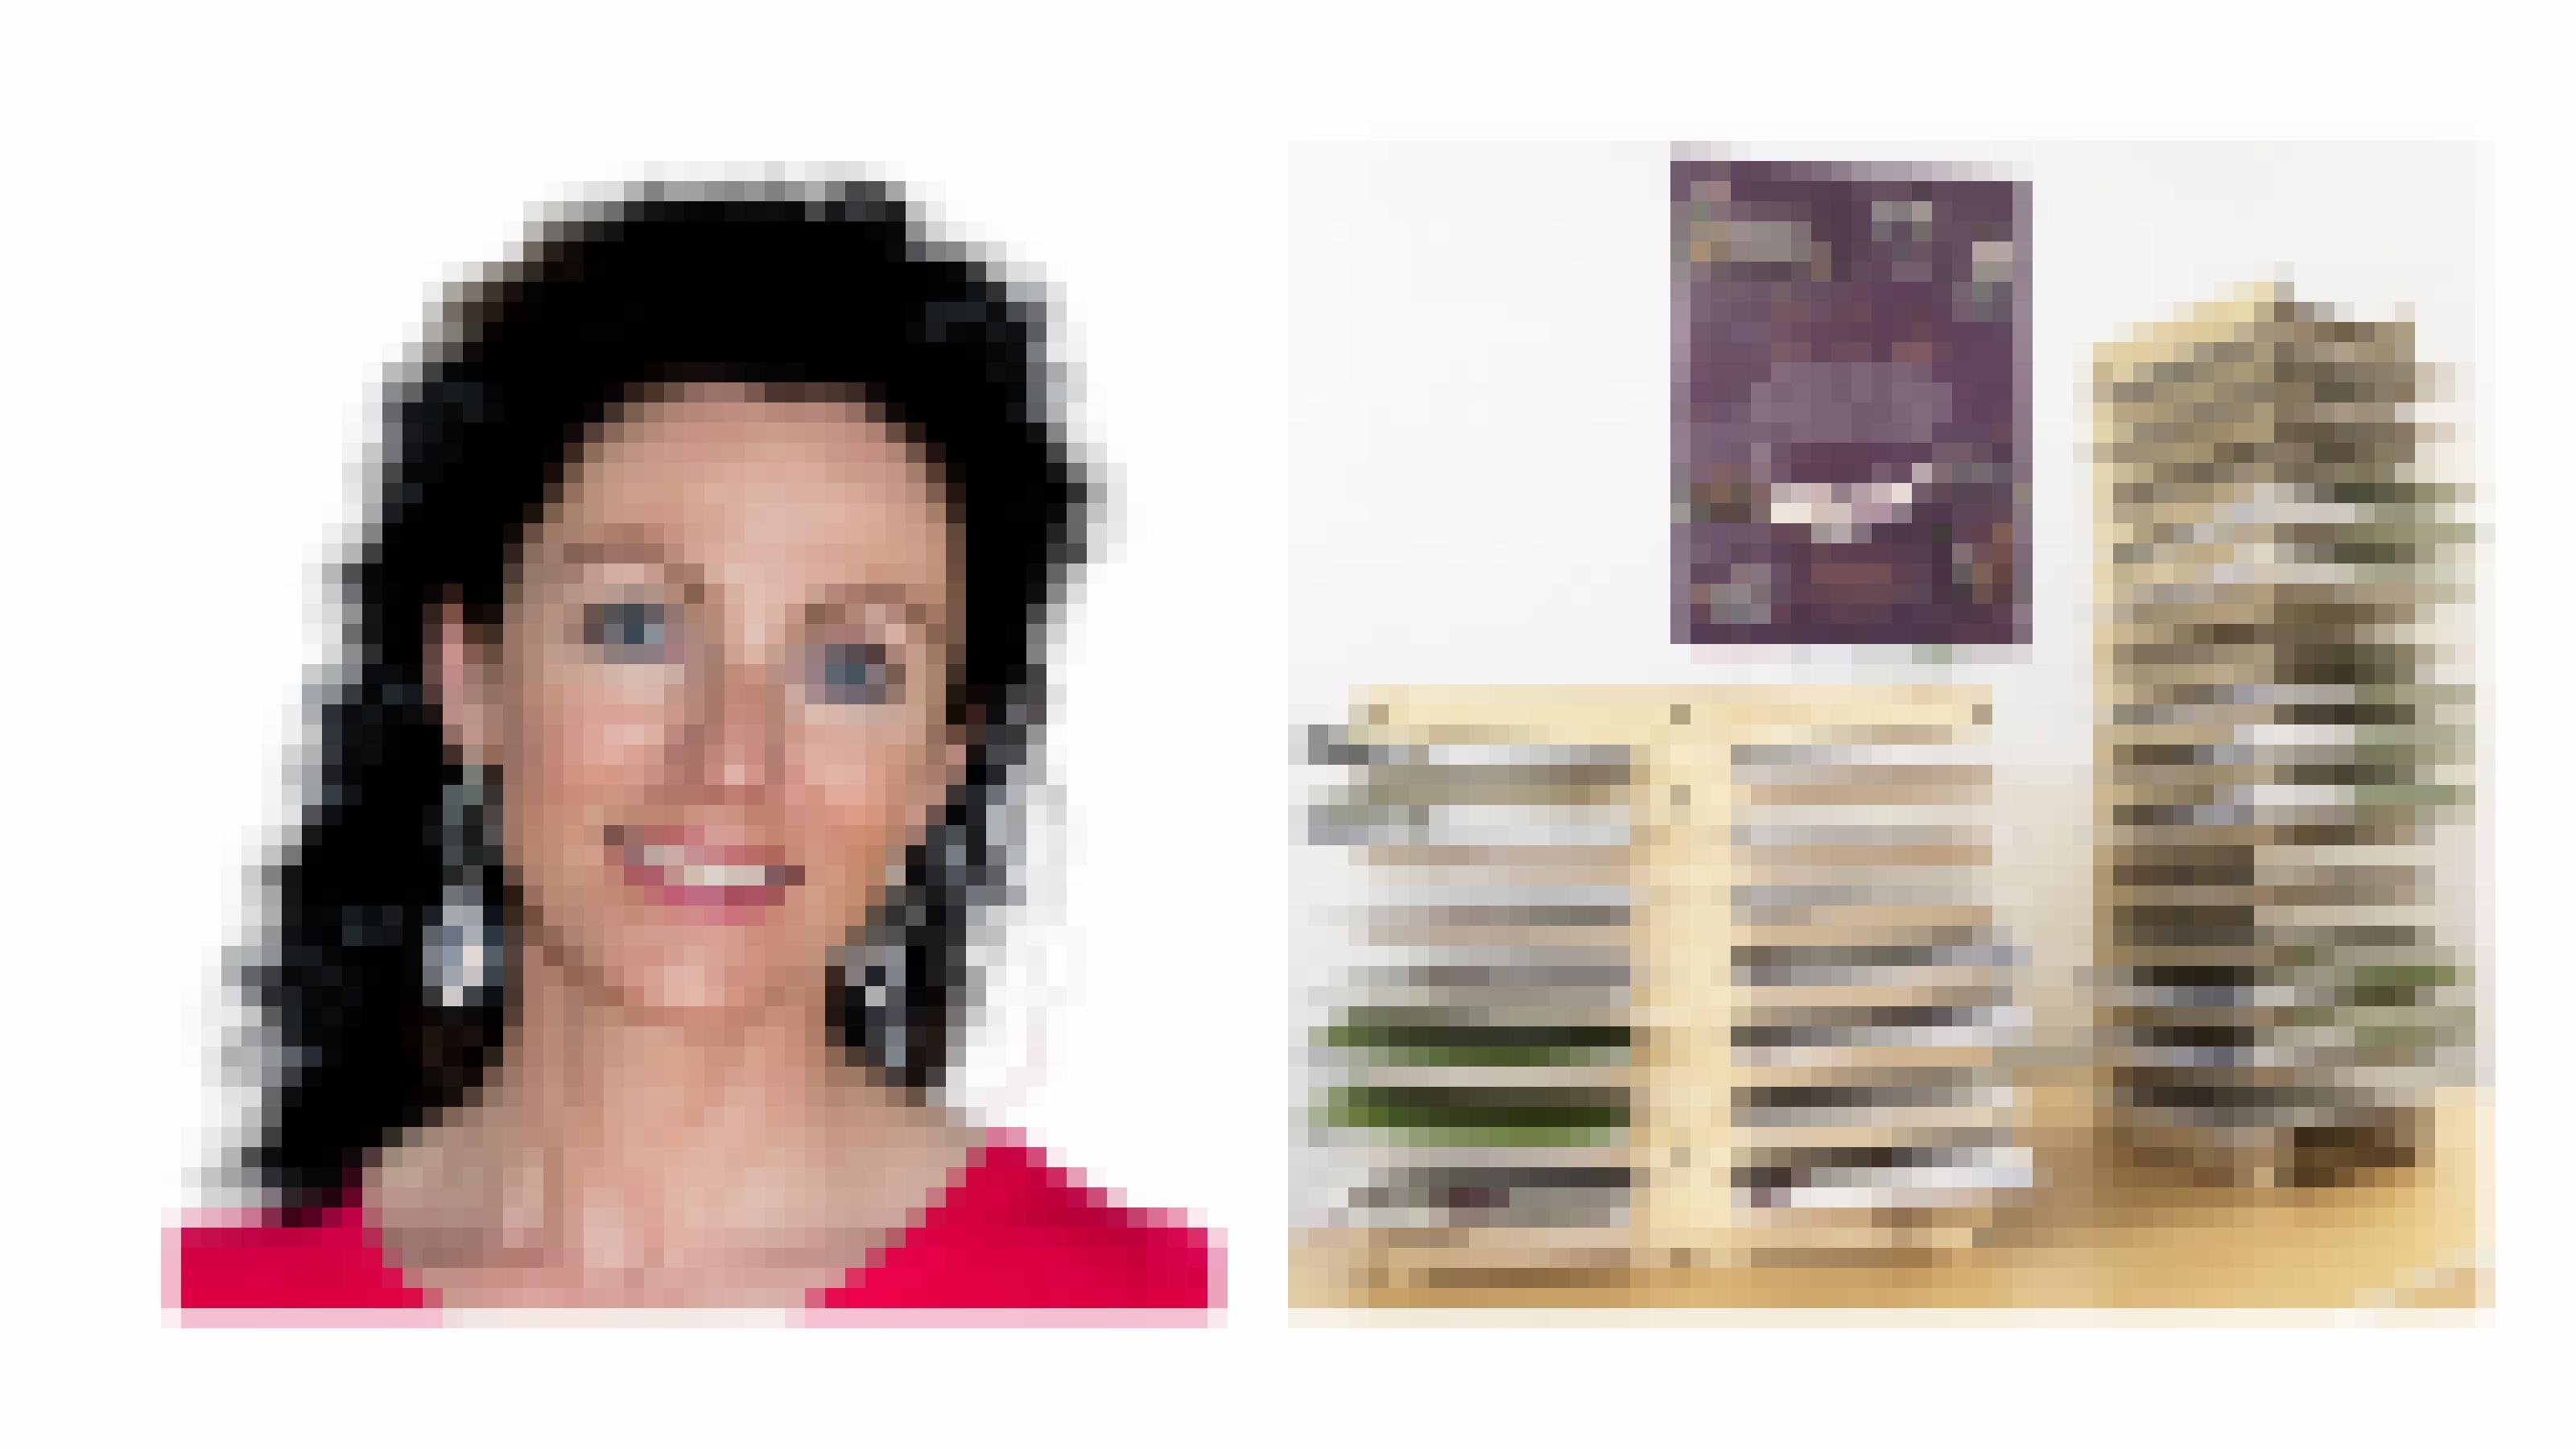 Portraitfoto und Darstellung der Infobox, einer Art Fächersystem, in dem Infoblätter stecken.